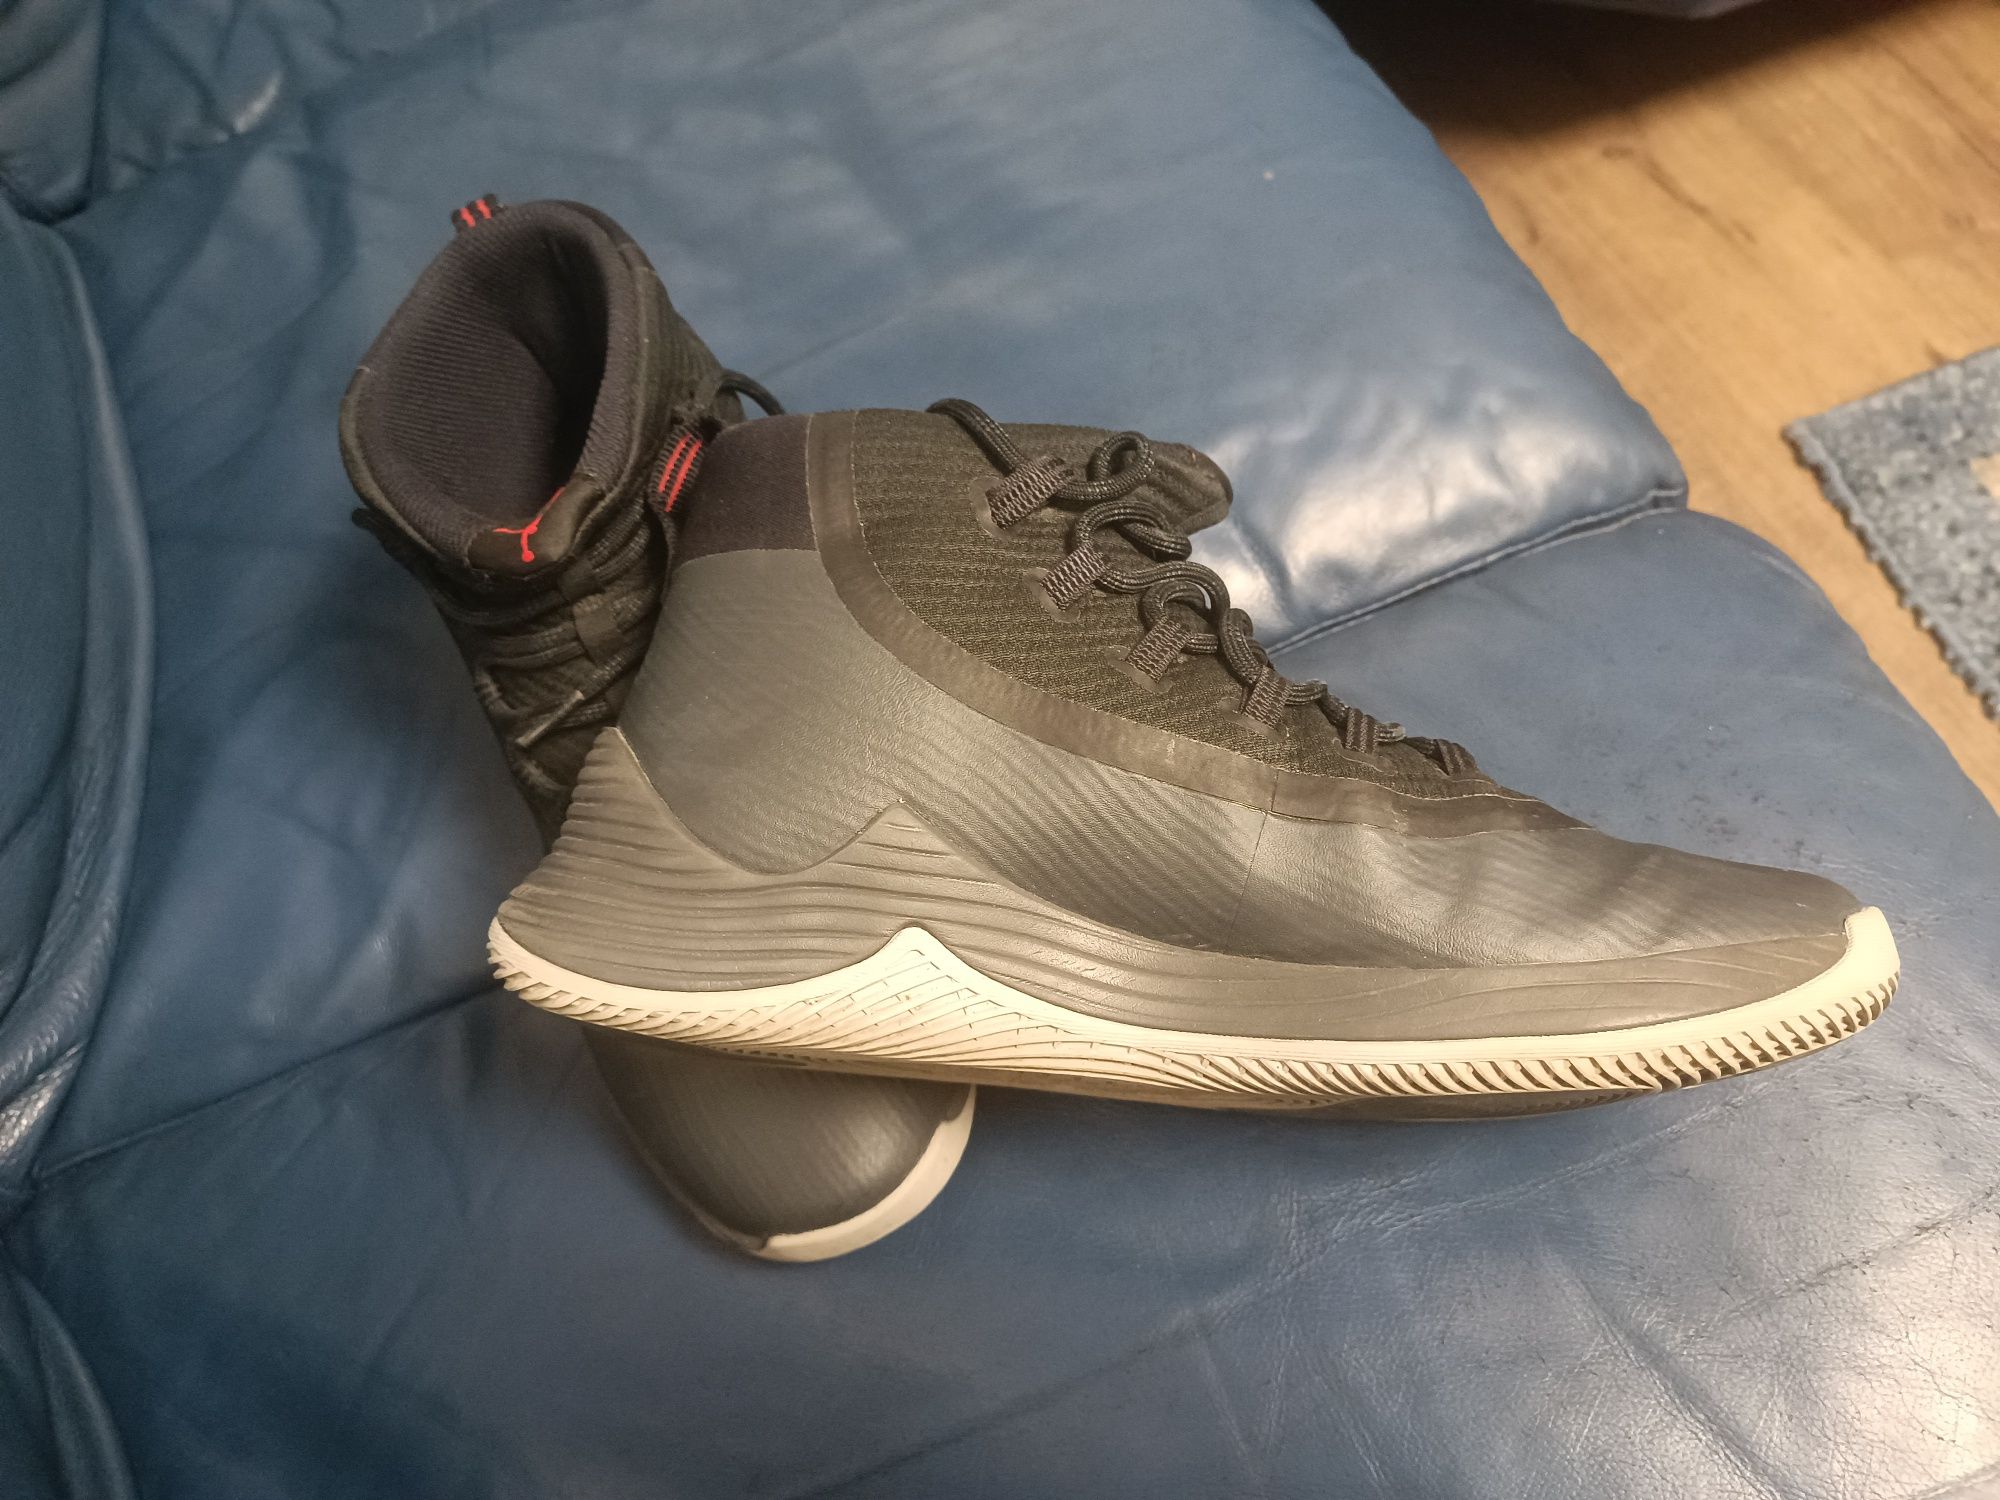 Nike Jordan air max